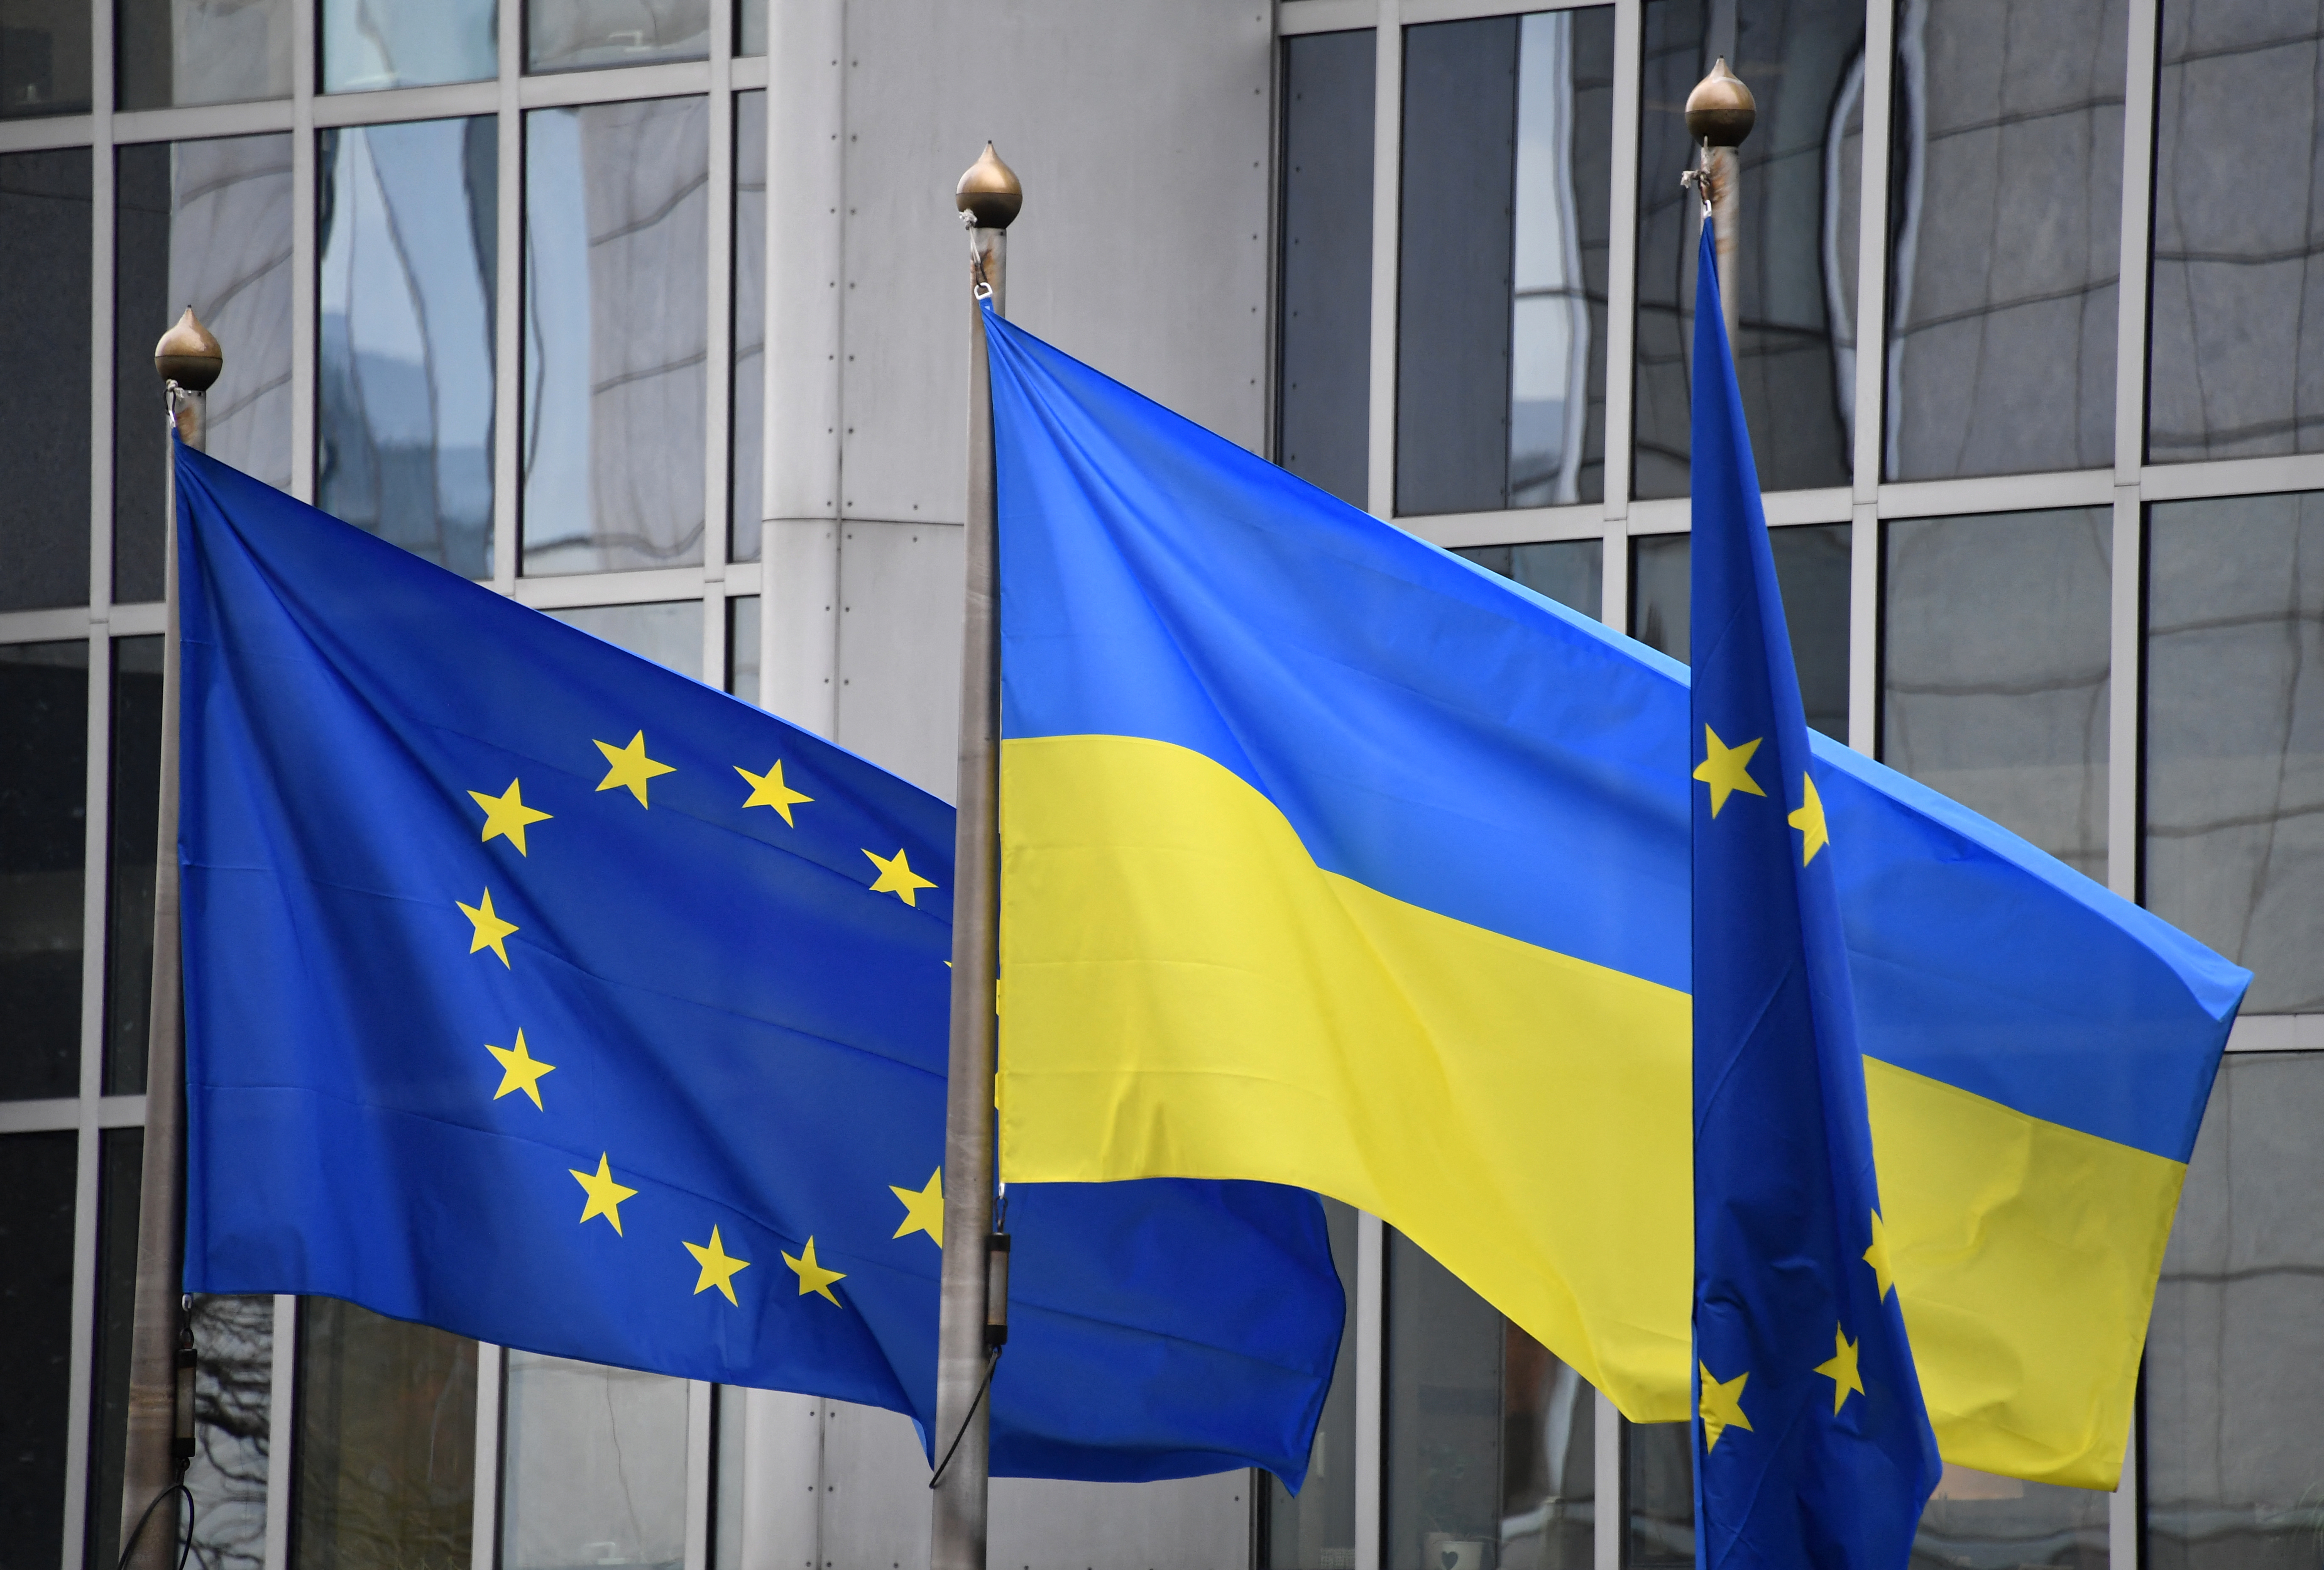 Nincs olyan opció, amely szerint Ukrajnát azonnal felvehetnék az EU-ba, ez nem pusztán politikai akarat kérdése